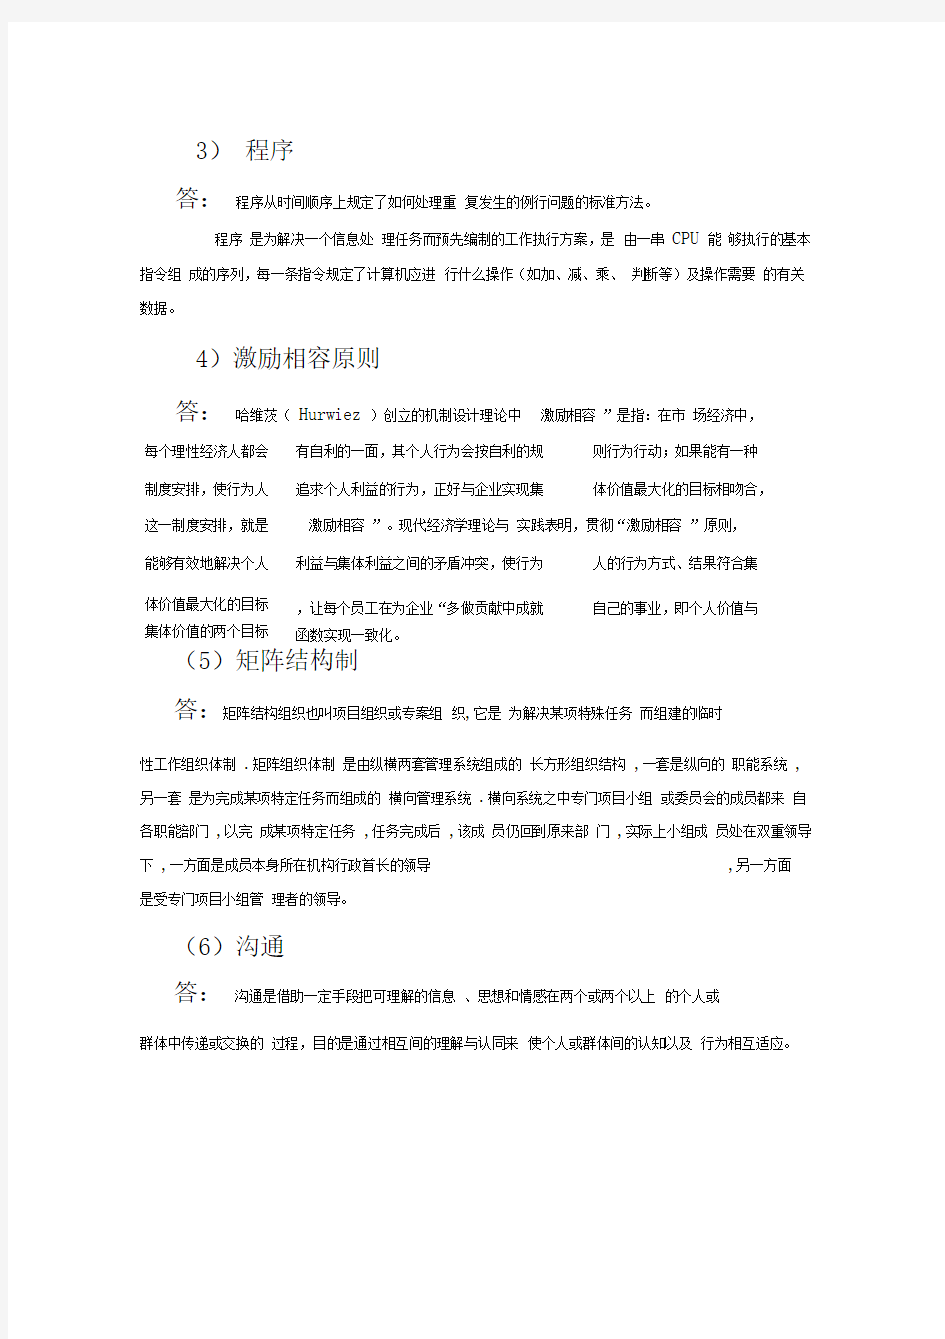 郑州大学现代远程教育《管理学》专科课程考核要求